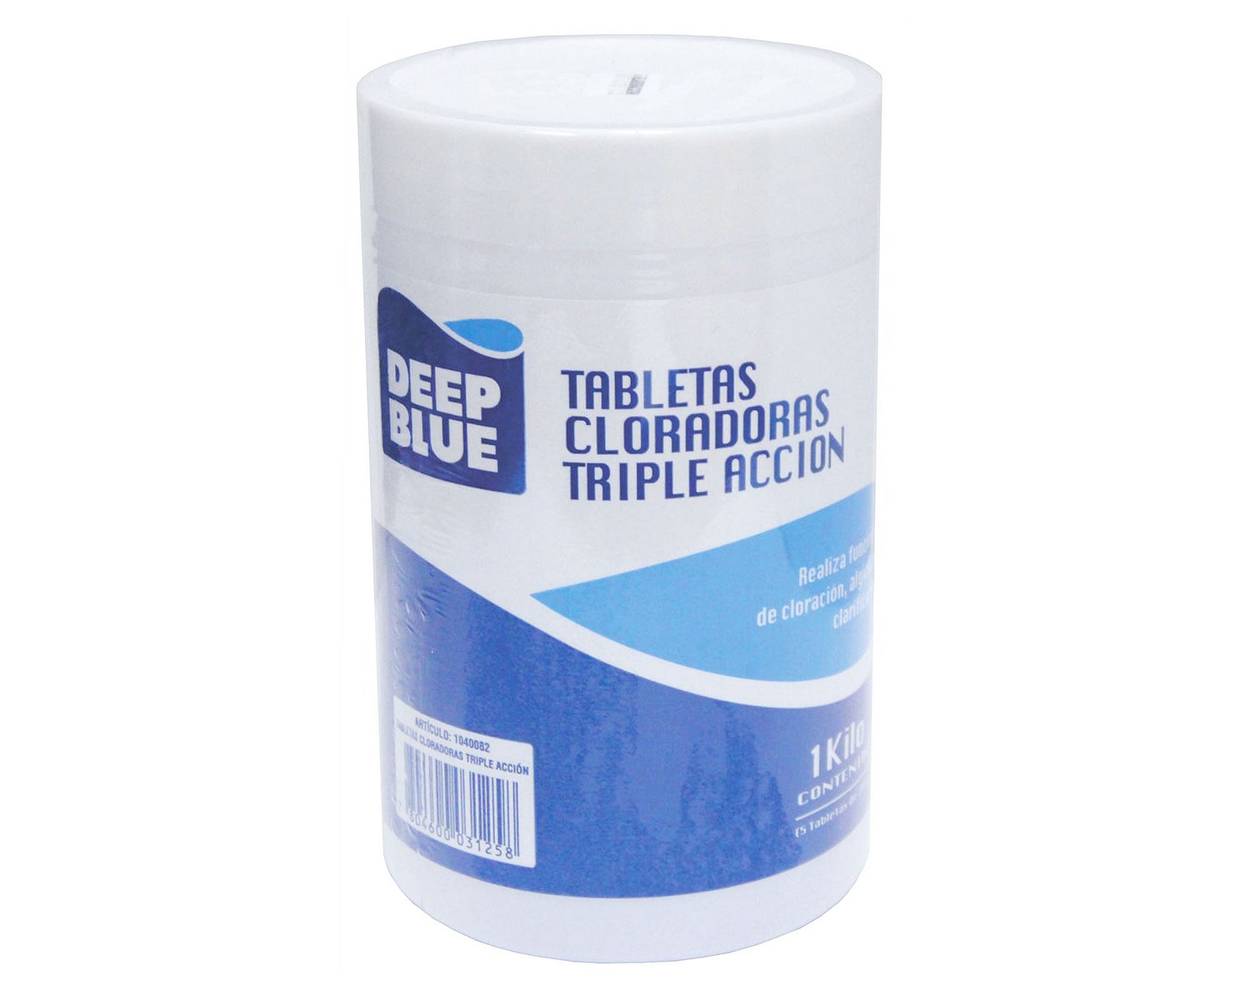 Deep blue tabletas cloradoras triple acción (1 kg)